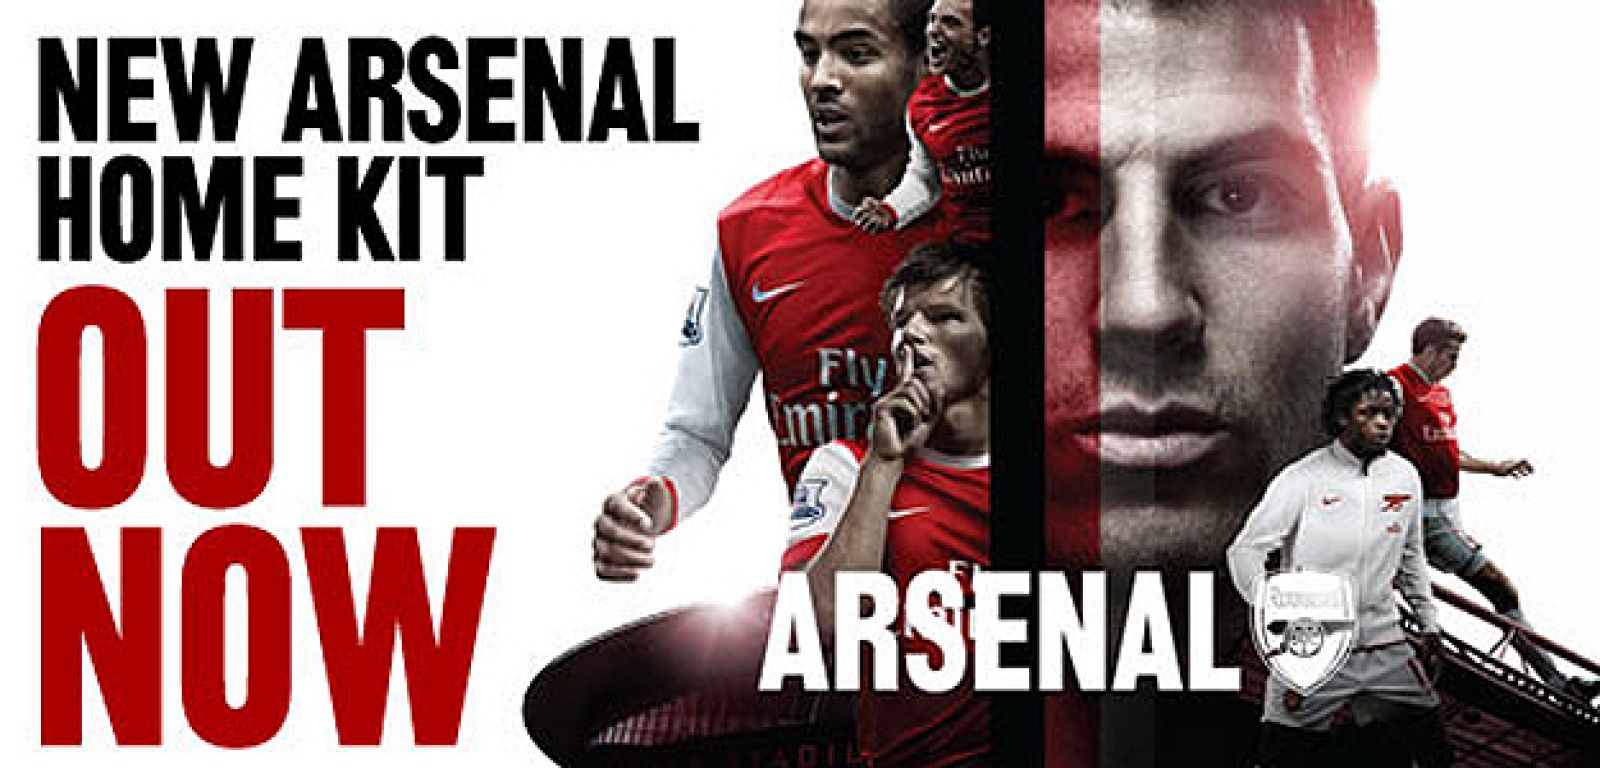 Cesc fábregas es el principal reclamo de la web del Arsenal para vender la nueva equipación